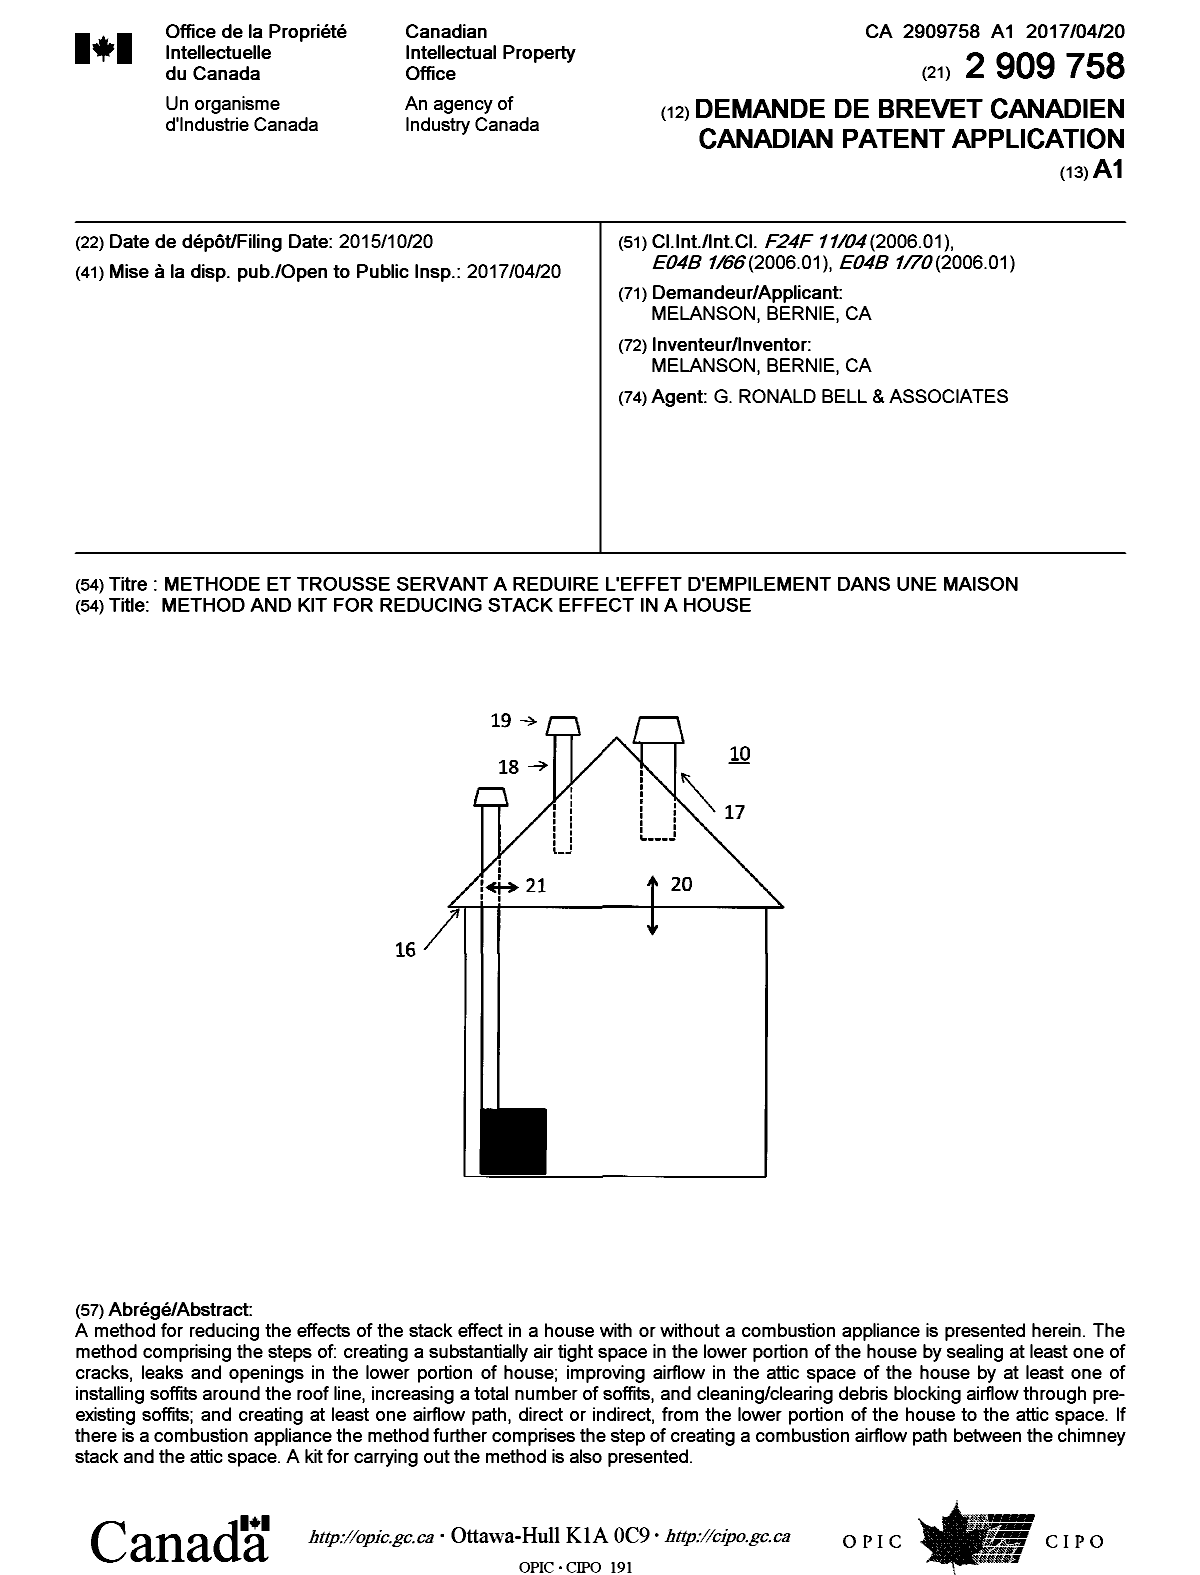 Document de brevet canadien 2909758. Page couverture 20170314. Image 1 de 1